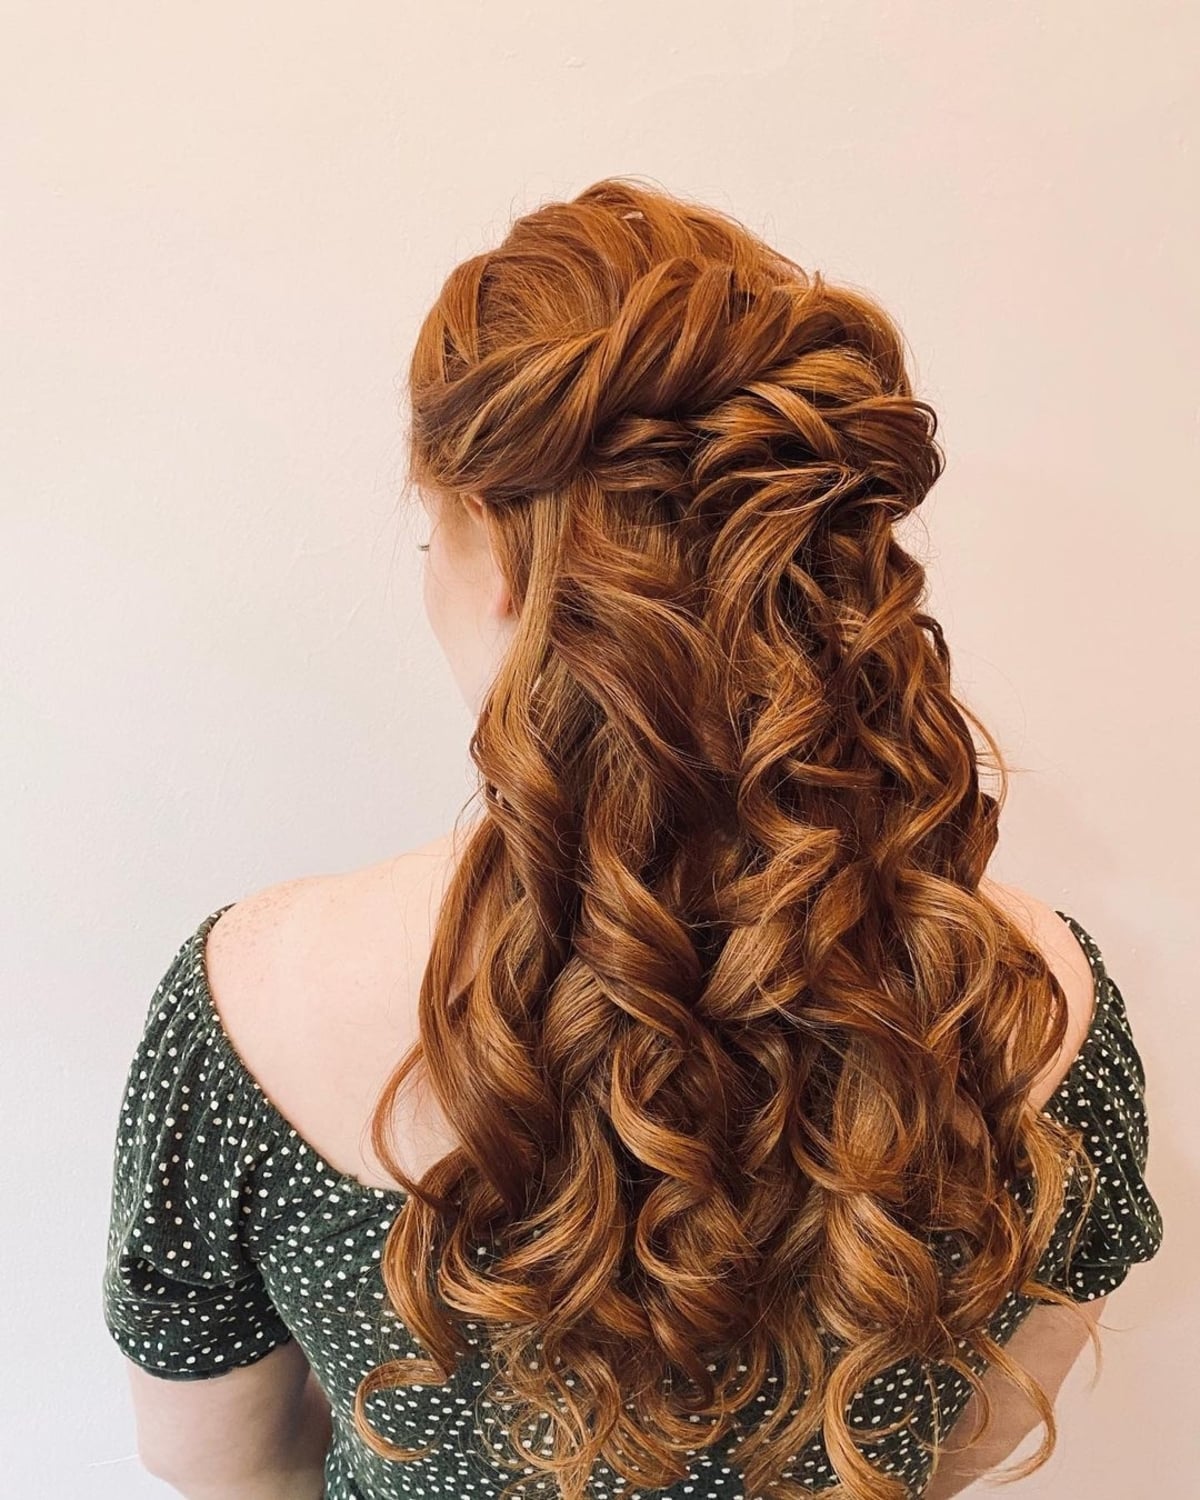 Cascading curls for a wedding